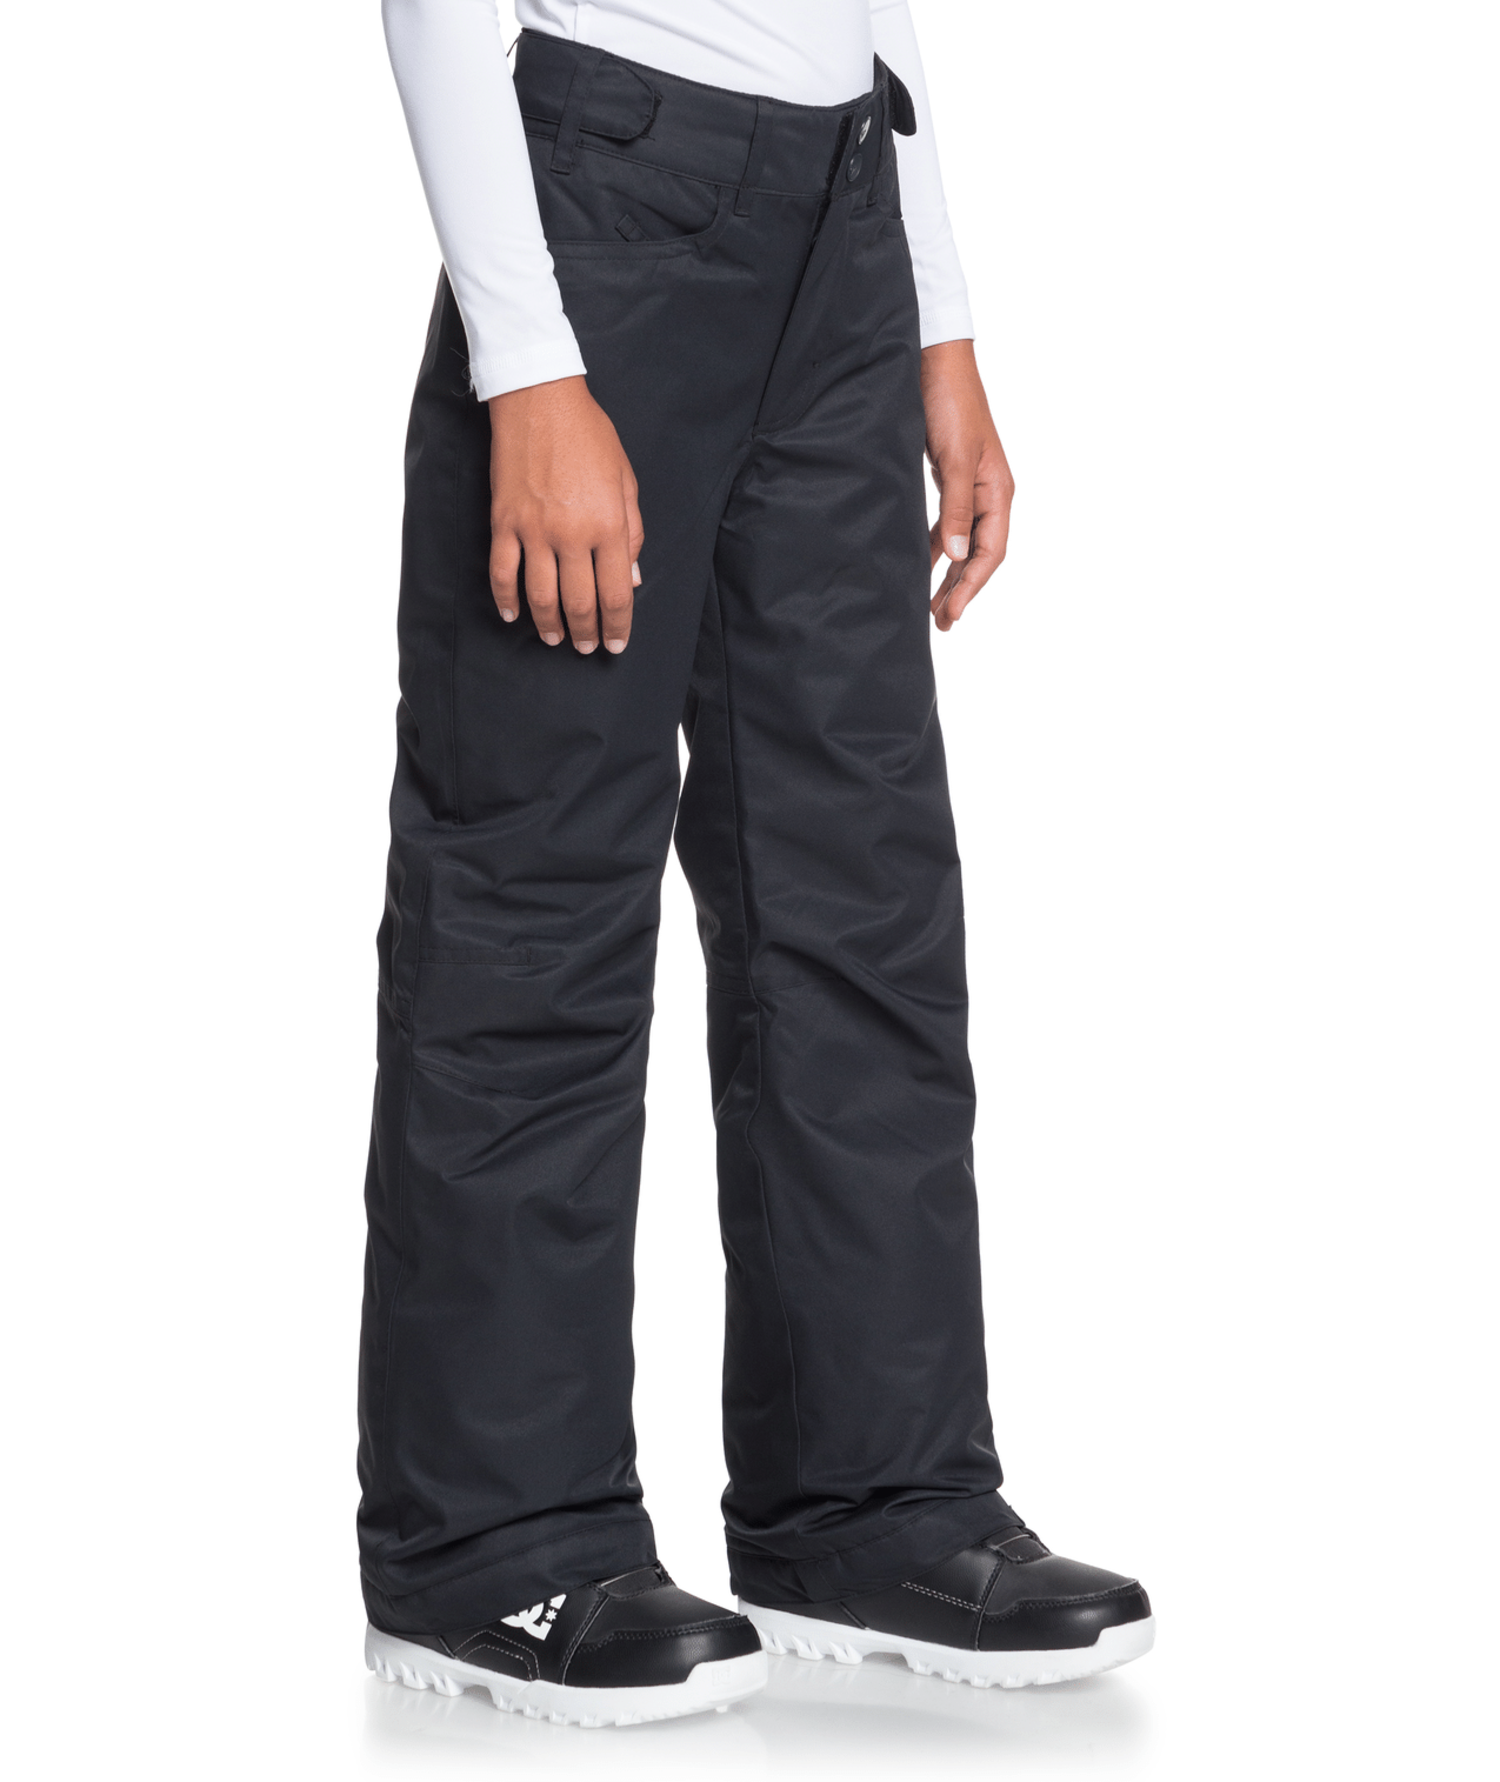 Roxy Backyard Black Snow Pants Women's Size XL B3128